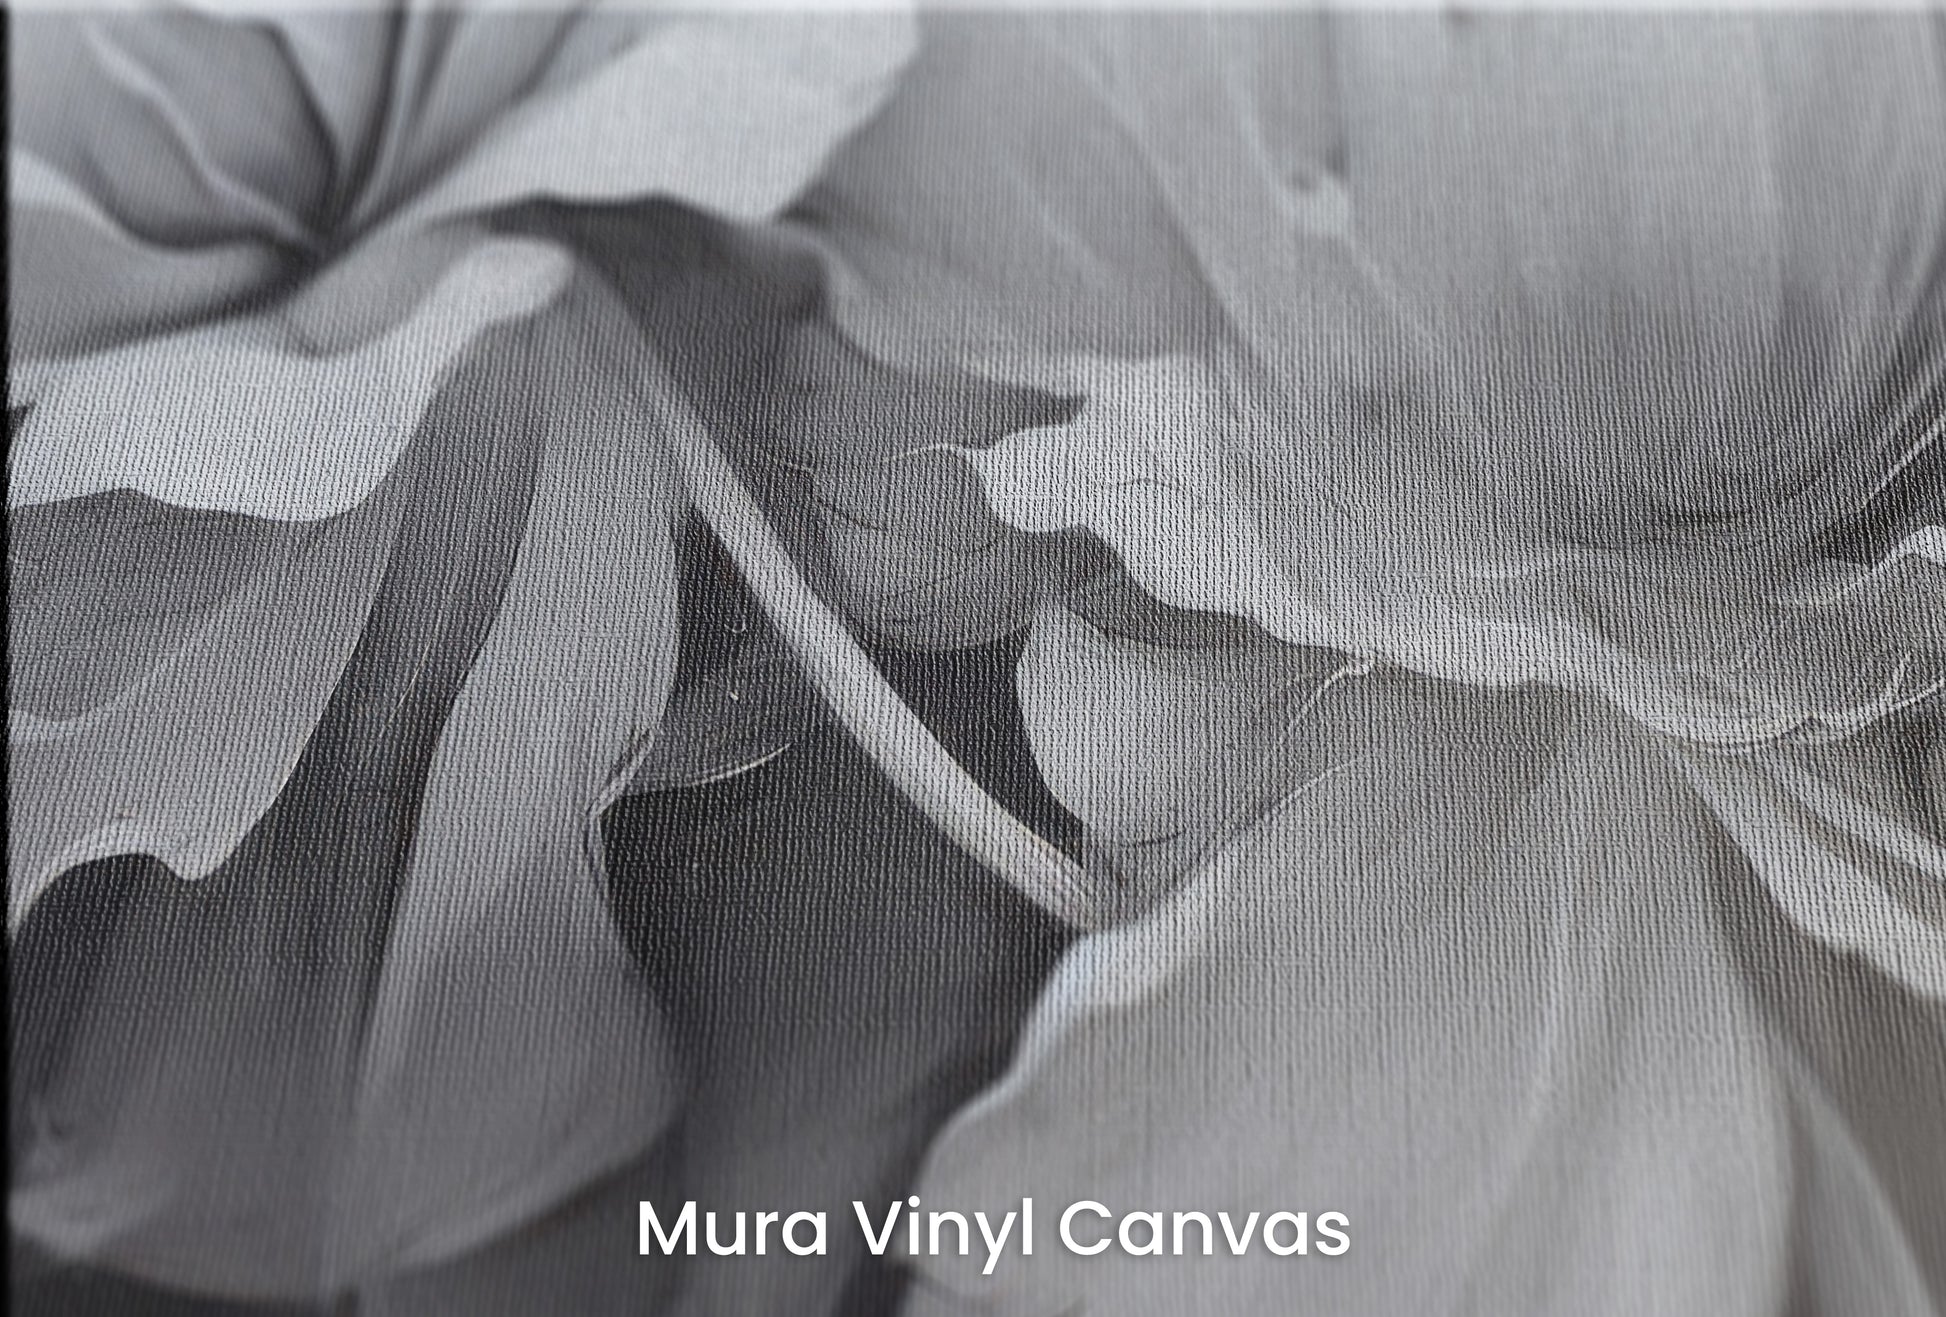 Zbliżenie na artystyczną fototapetę o nazwie SILVER WHISPERING PETALS na podłożu Mura Vinyl Canvas - faktura naturalnego płótna.